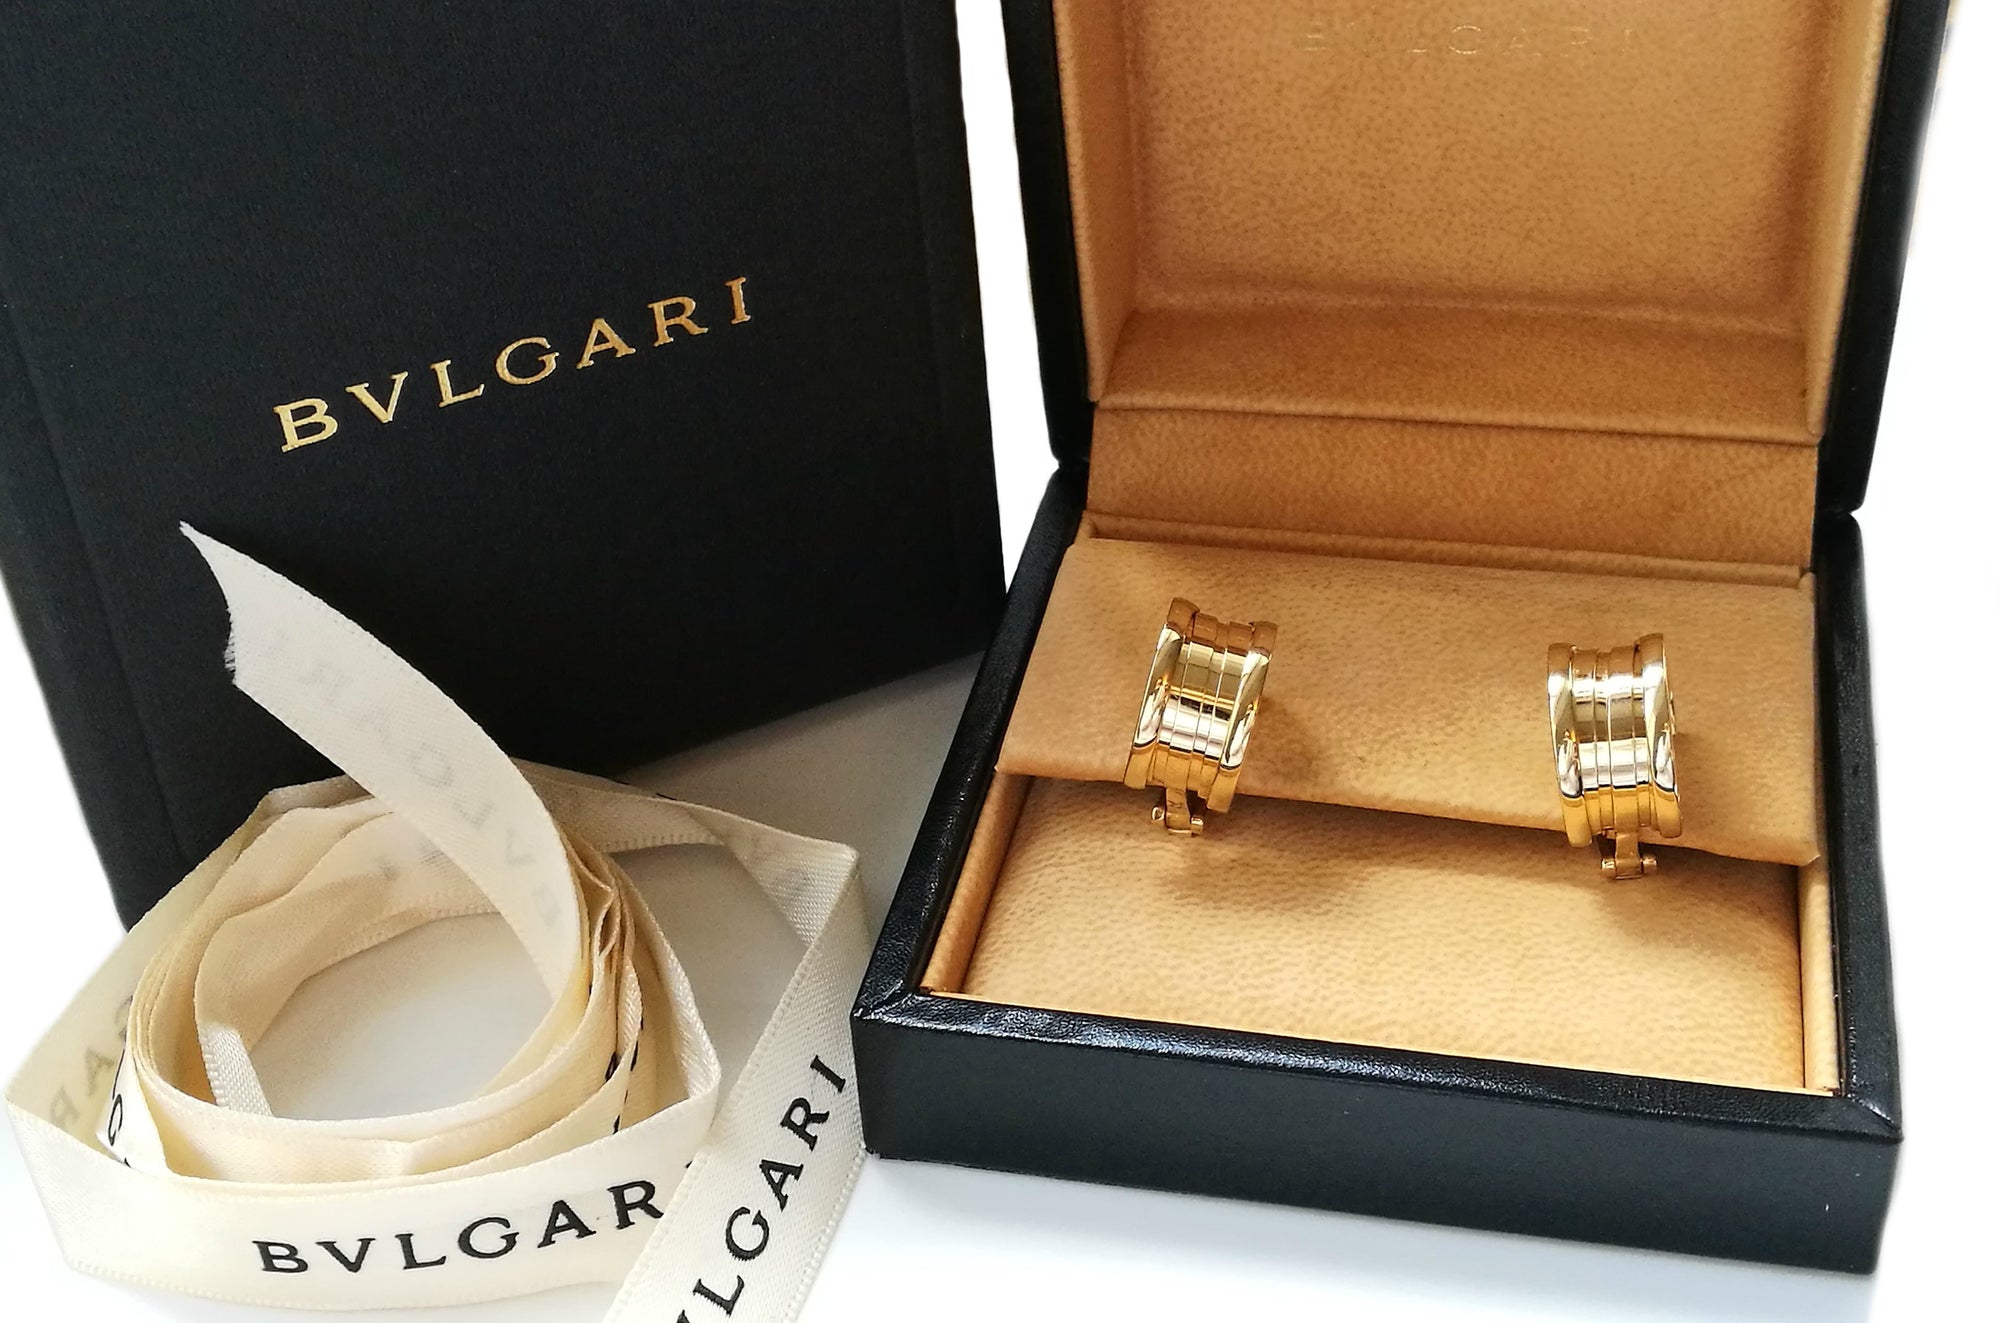 Bulgari Bvlgari 18k Yellow Gold  Earrings in Original Box -  Bloomsbury Manor Ltd